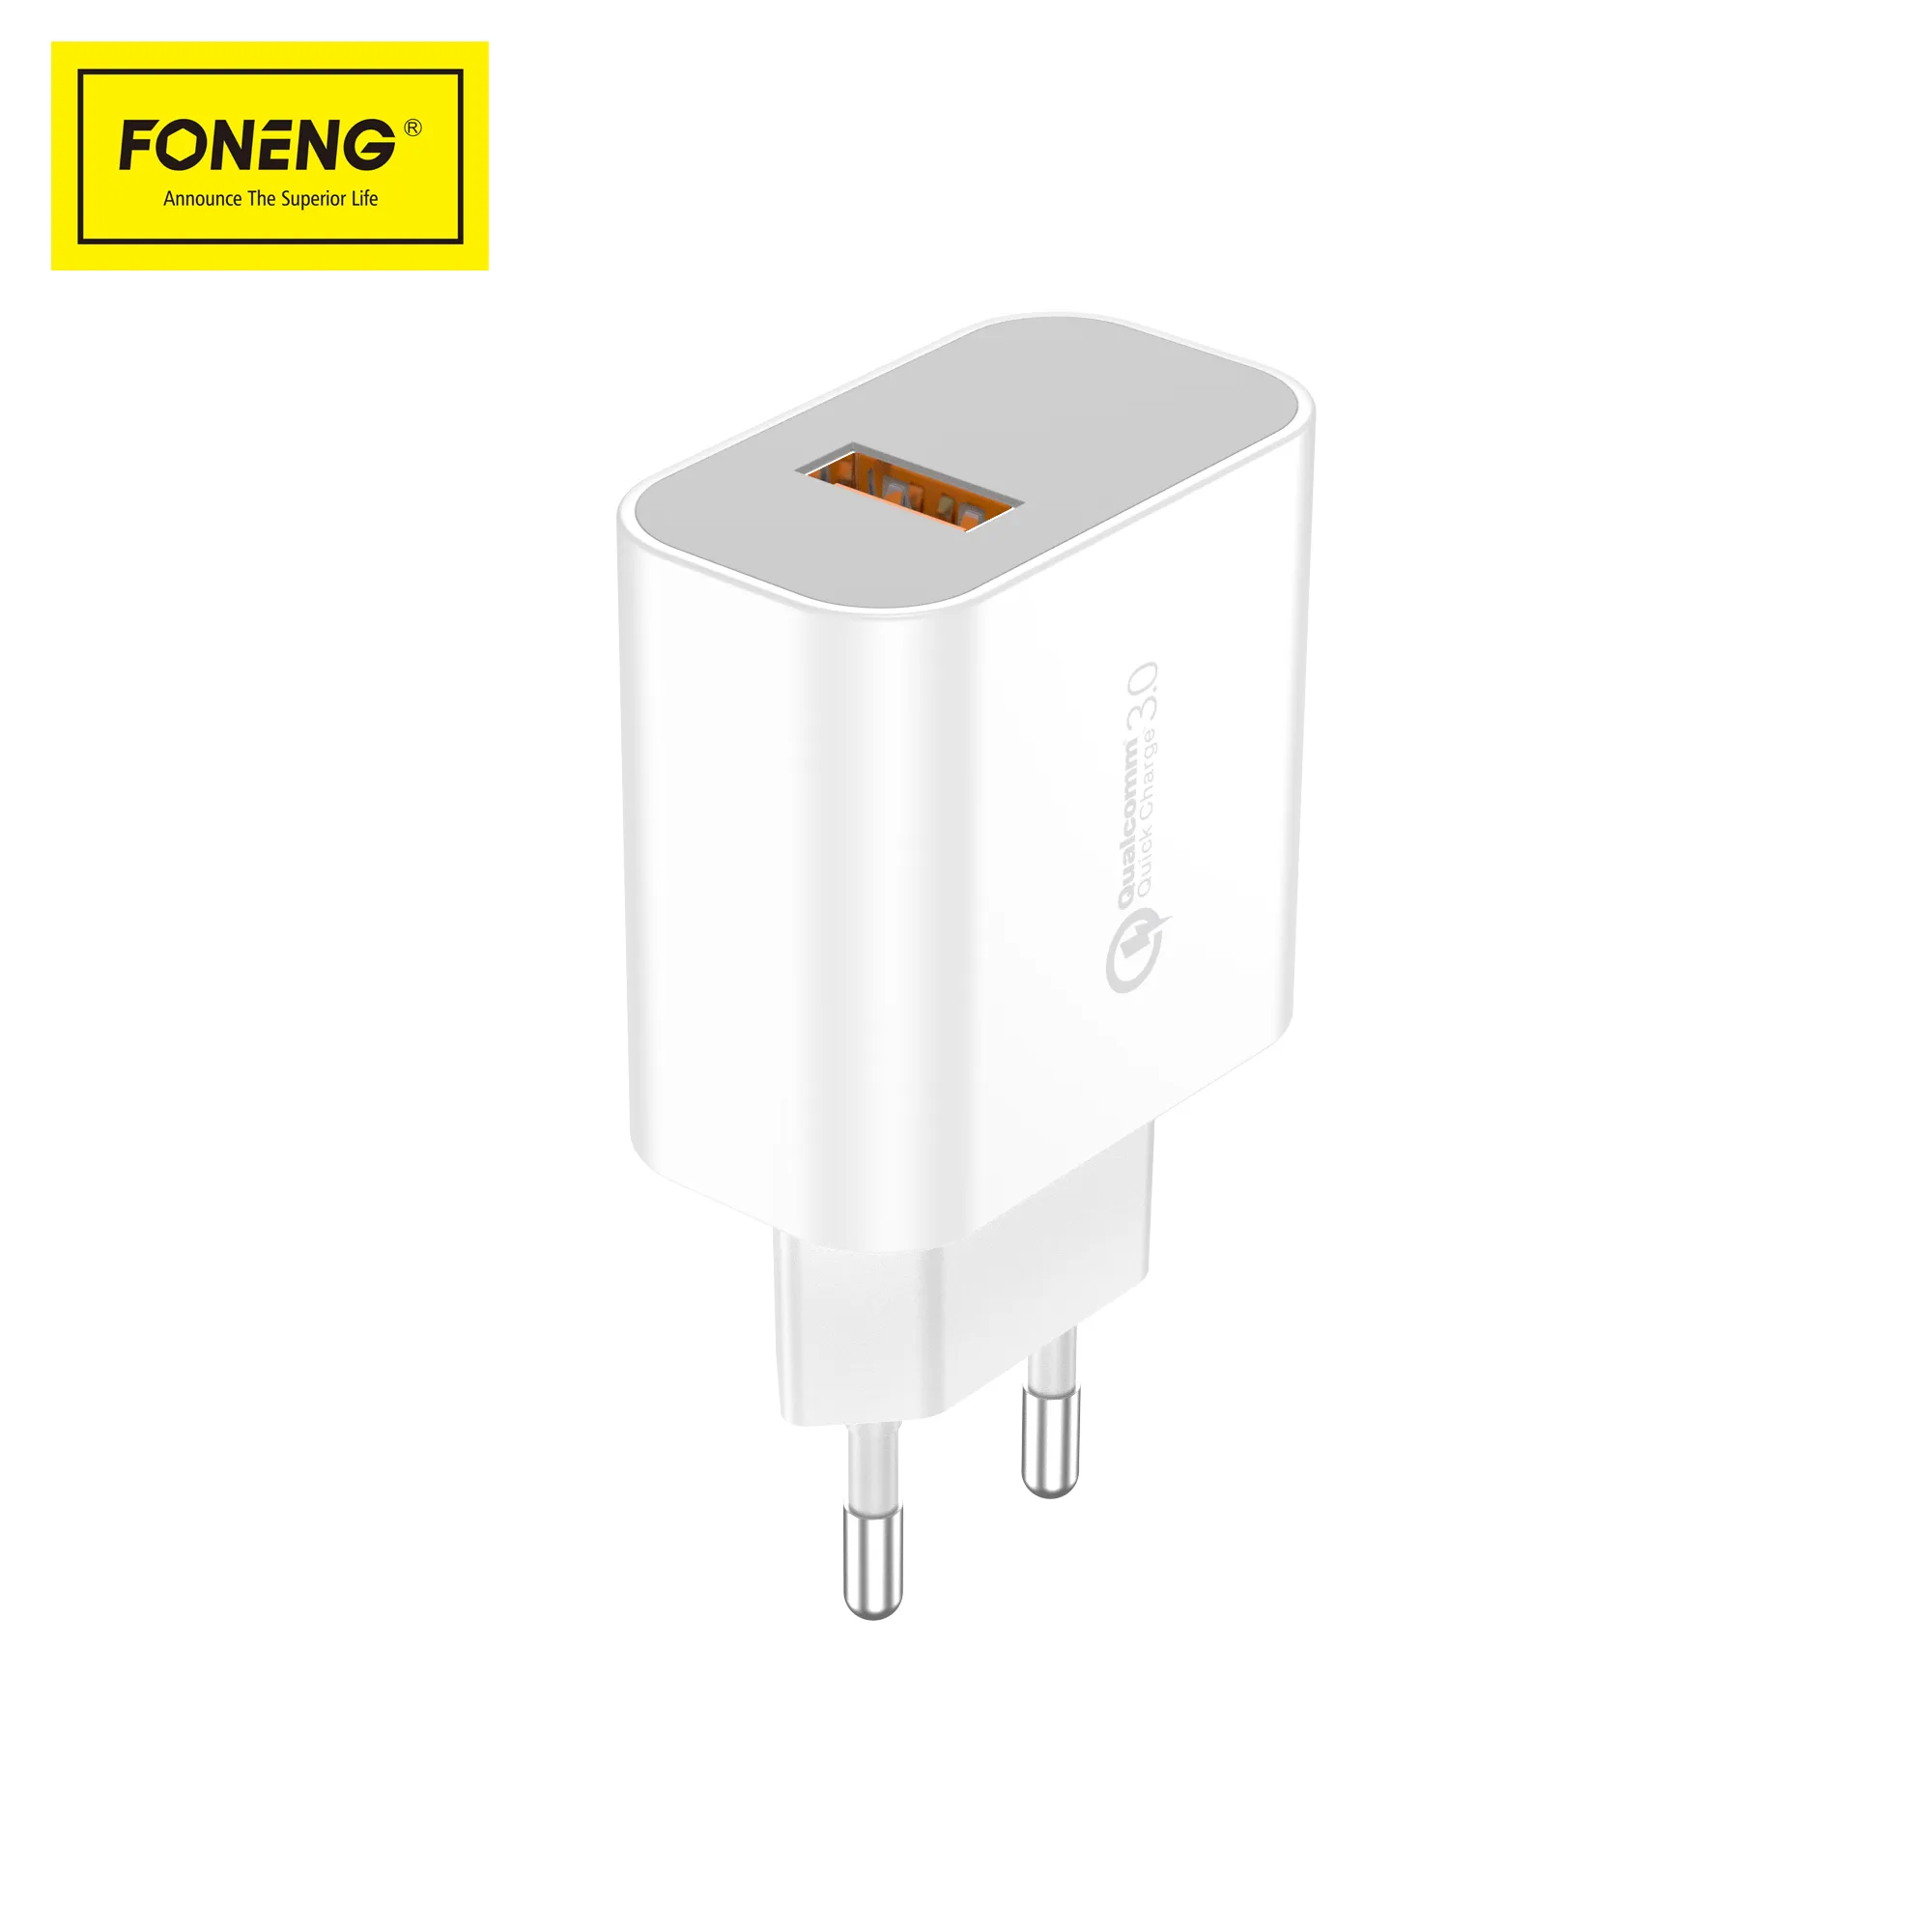 FONENG yeni varış EU46 USB şarj aleti 3A hızlı şarj QC3.0 USB şarj aleti hızlı şarj taşınabilir cep telefonu adaptörü ile kablo